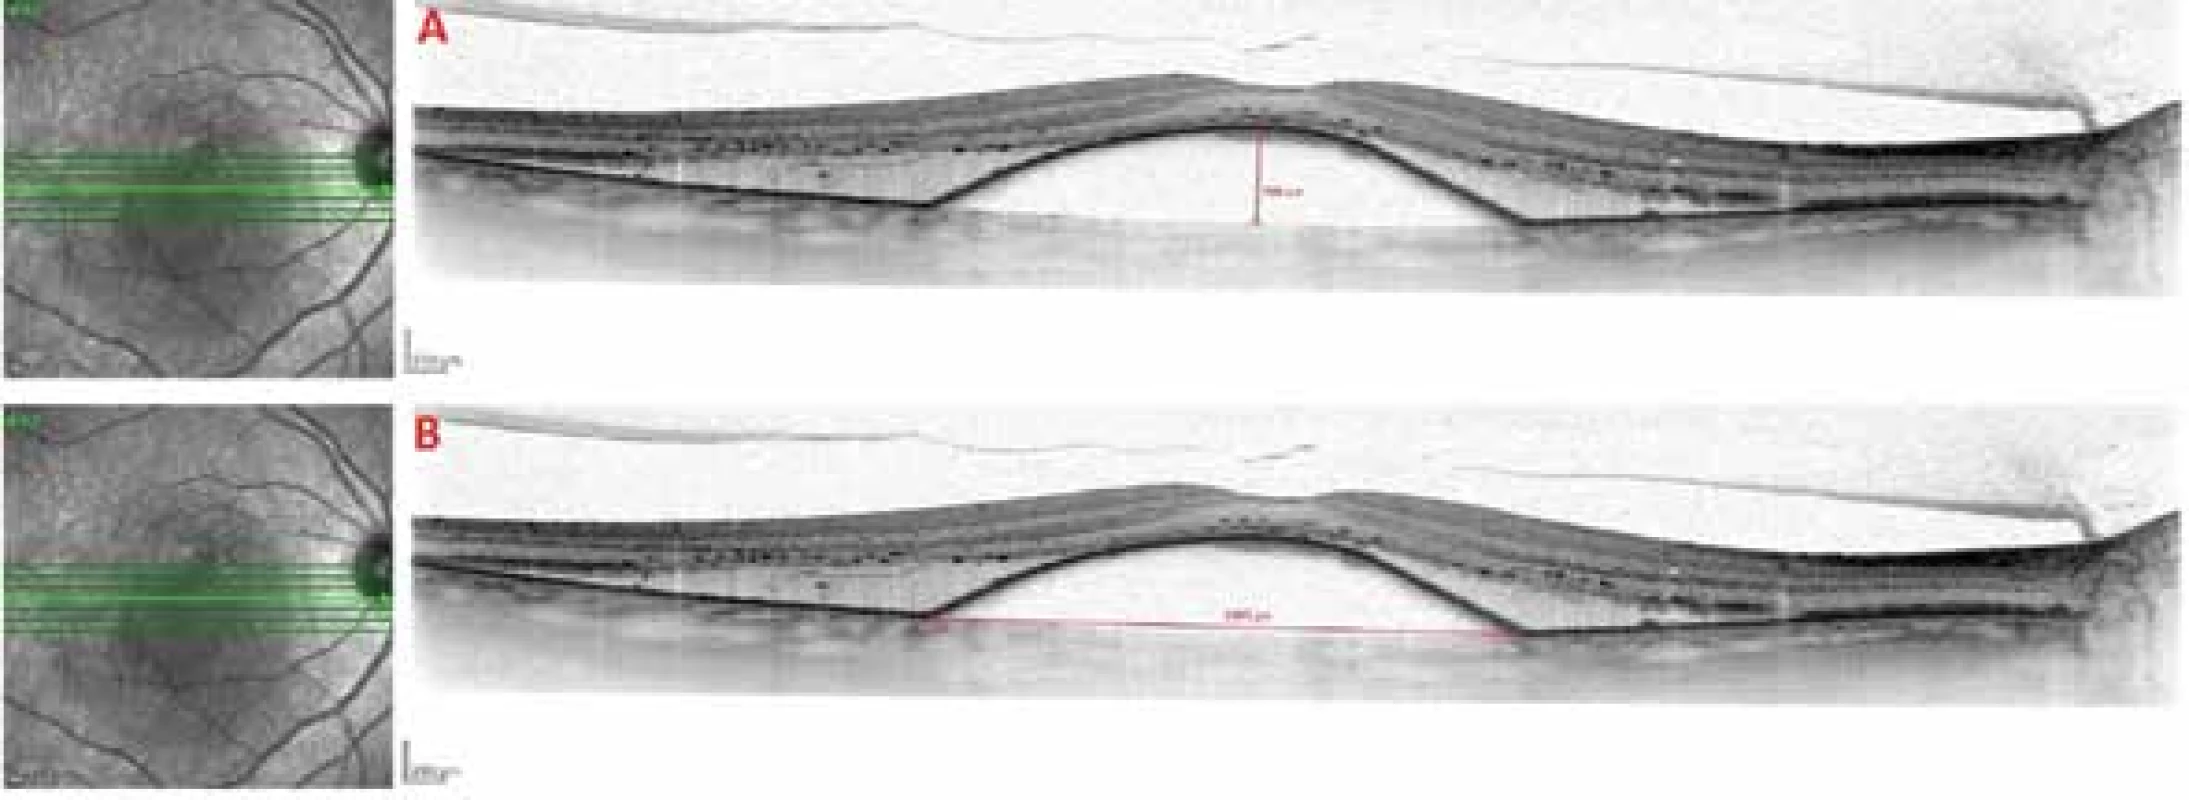  SD-OCT snímek vaskulární serózní ablace retinálního pigmentového epitelu na podkladě
okultní choroidální neovaskularizace
A. Metodika měření výšky ablace retinálního pigmentového epitelu
B. Metodika měření šířky ablace retinálního pigmentového epitelu